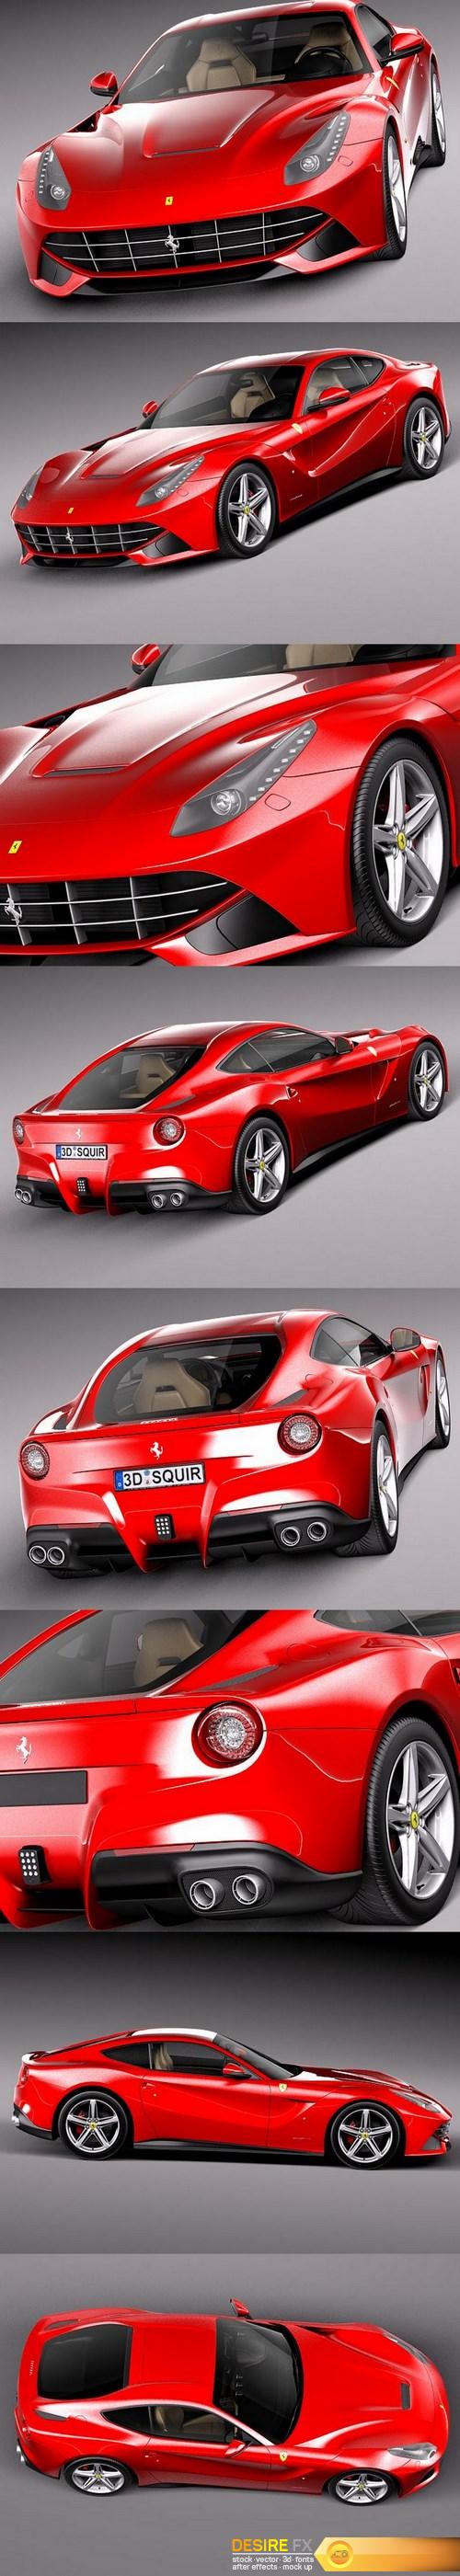 Ferrari F12 Berlinetta 2013-2016 3D Model (2)